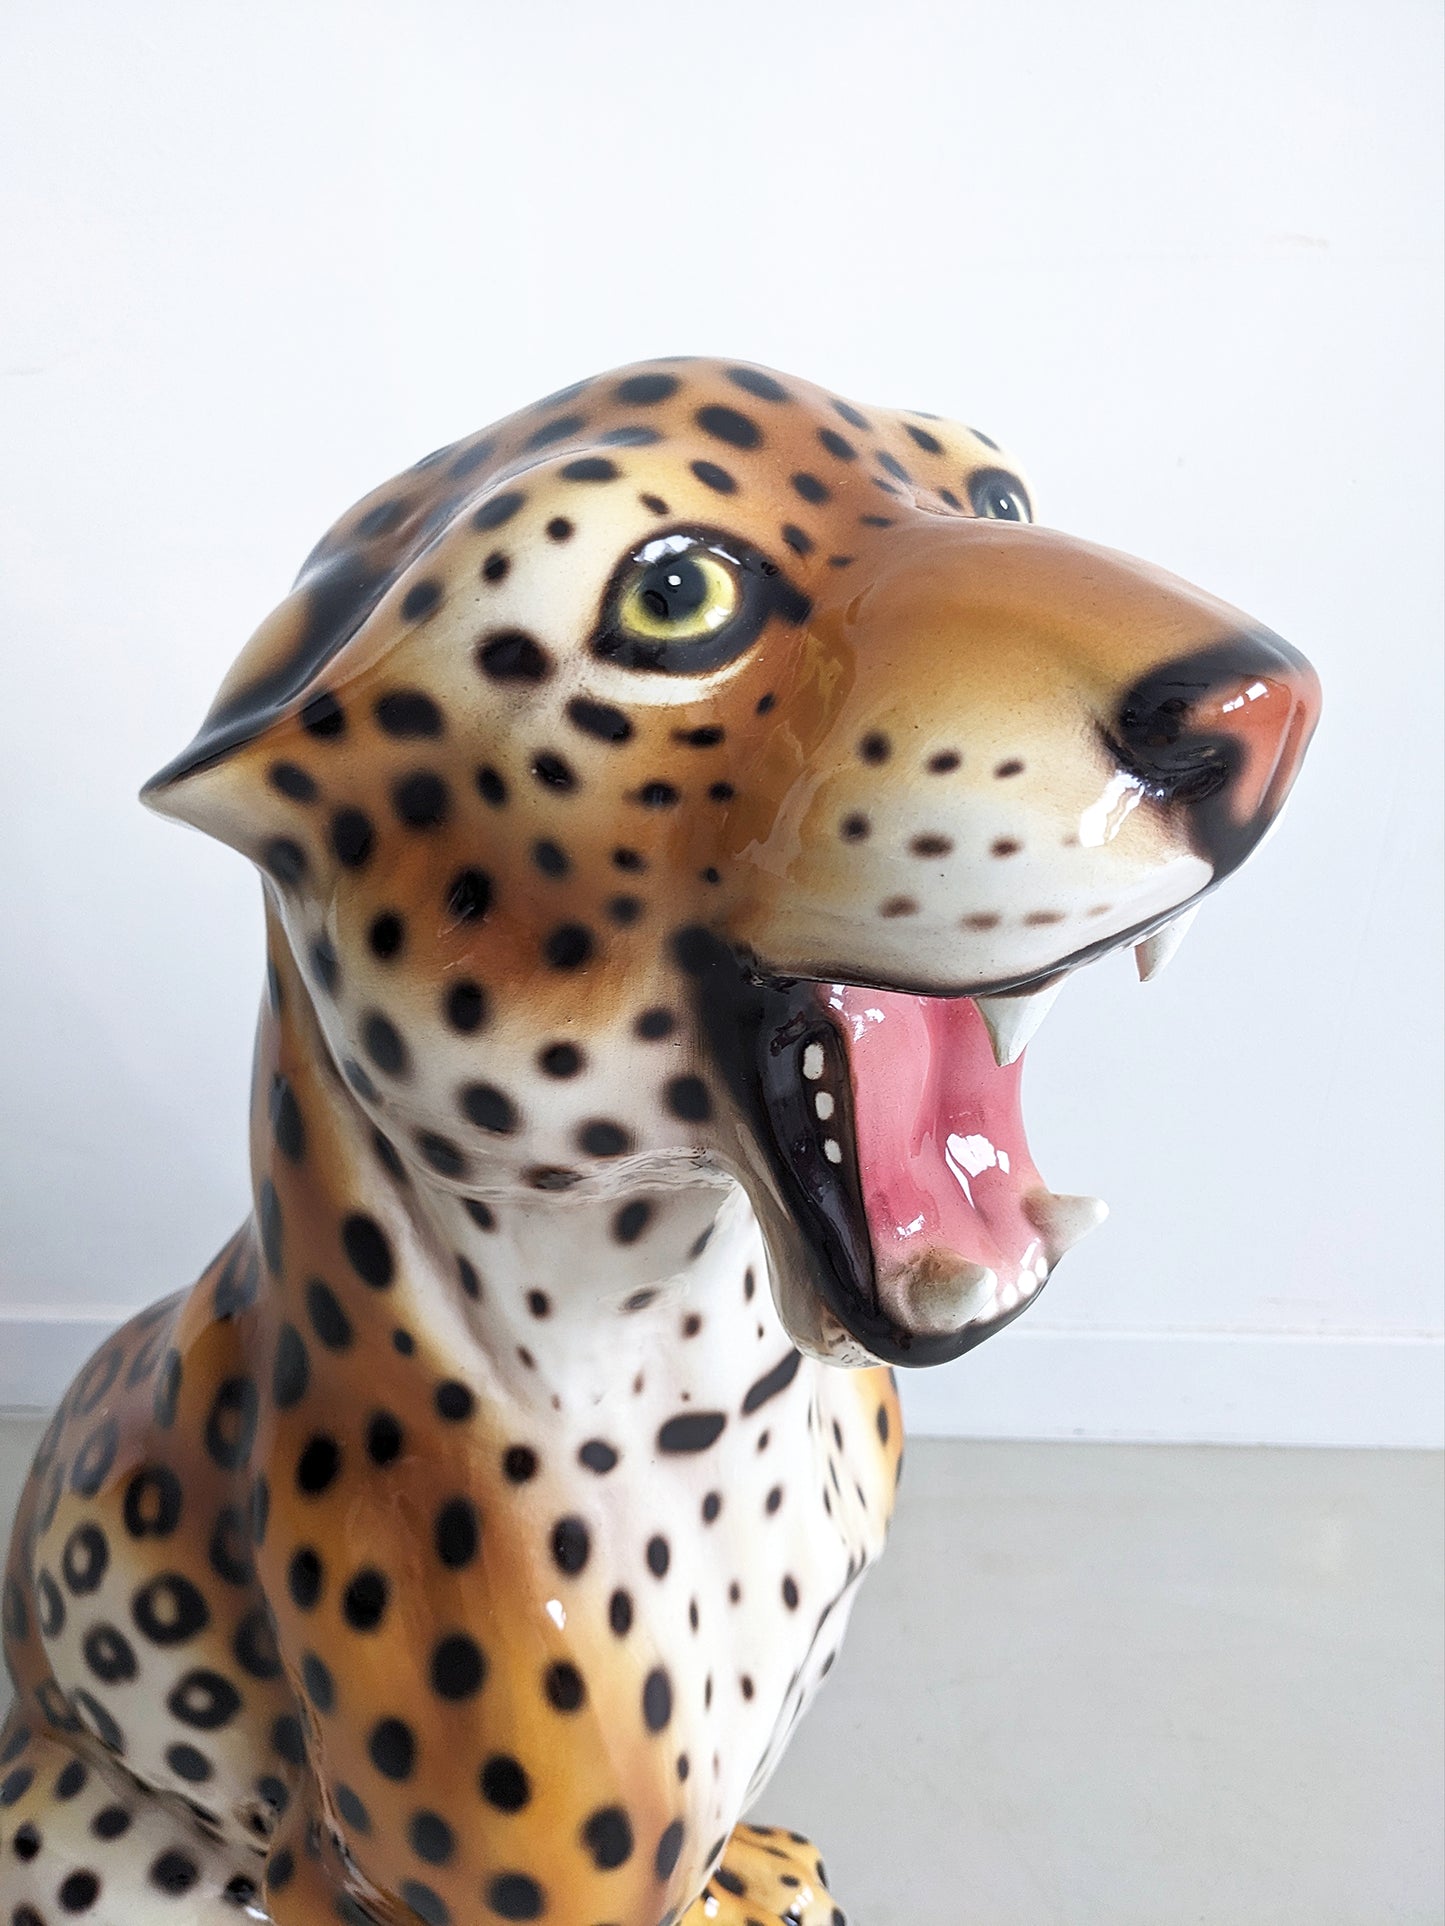 XL Ceramic Leopard Statue 1990's